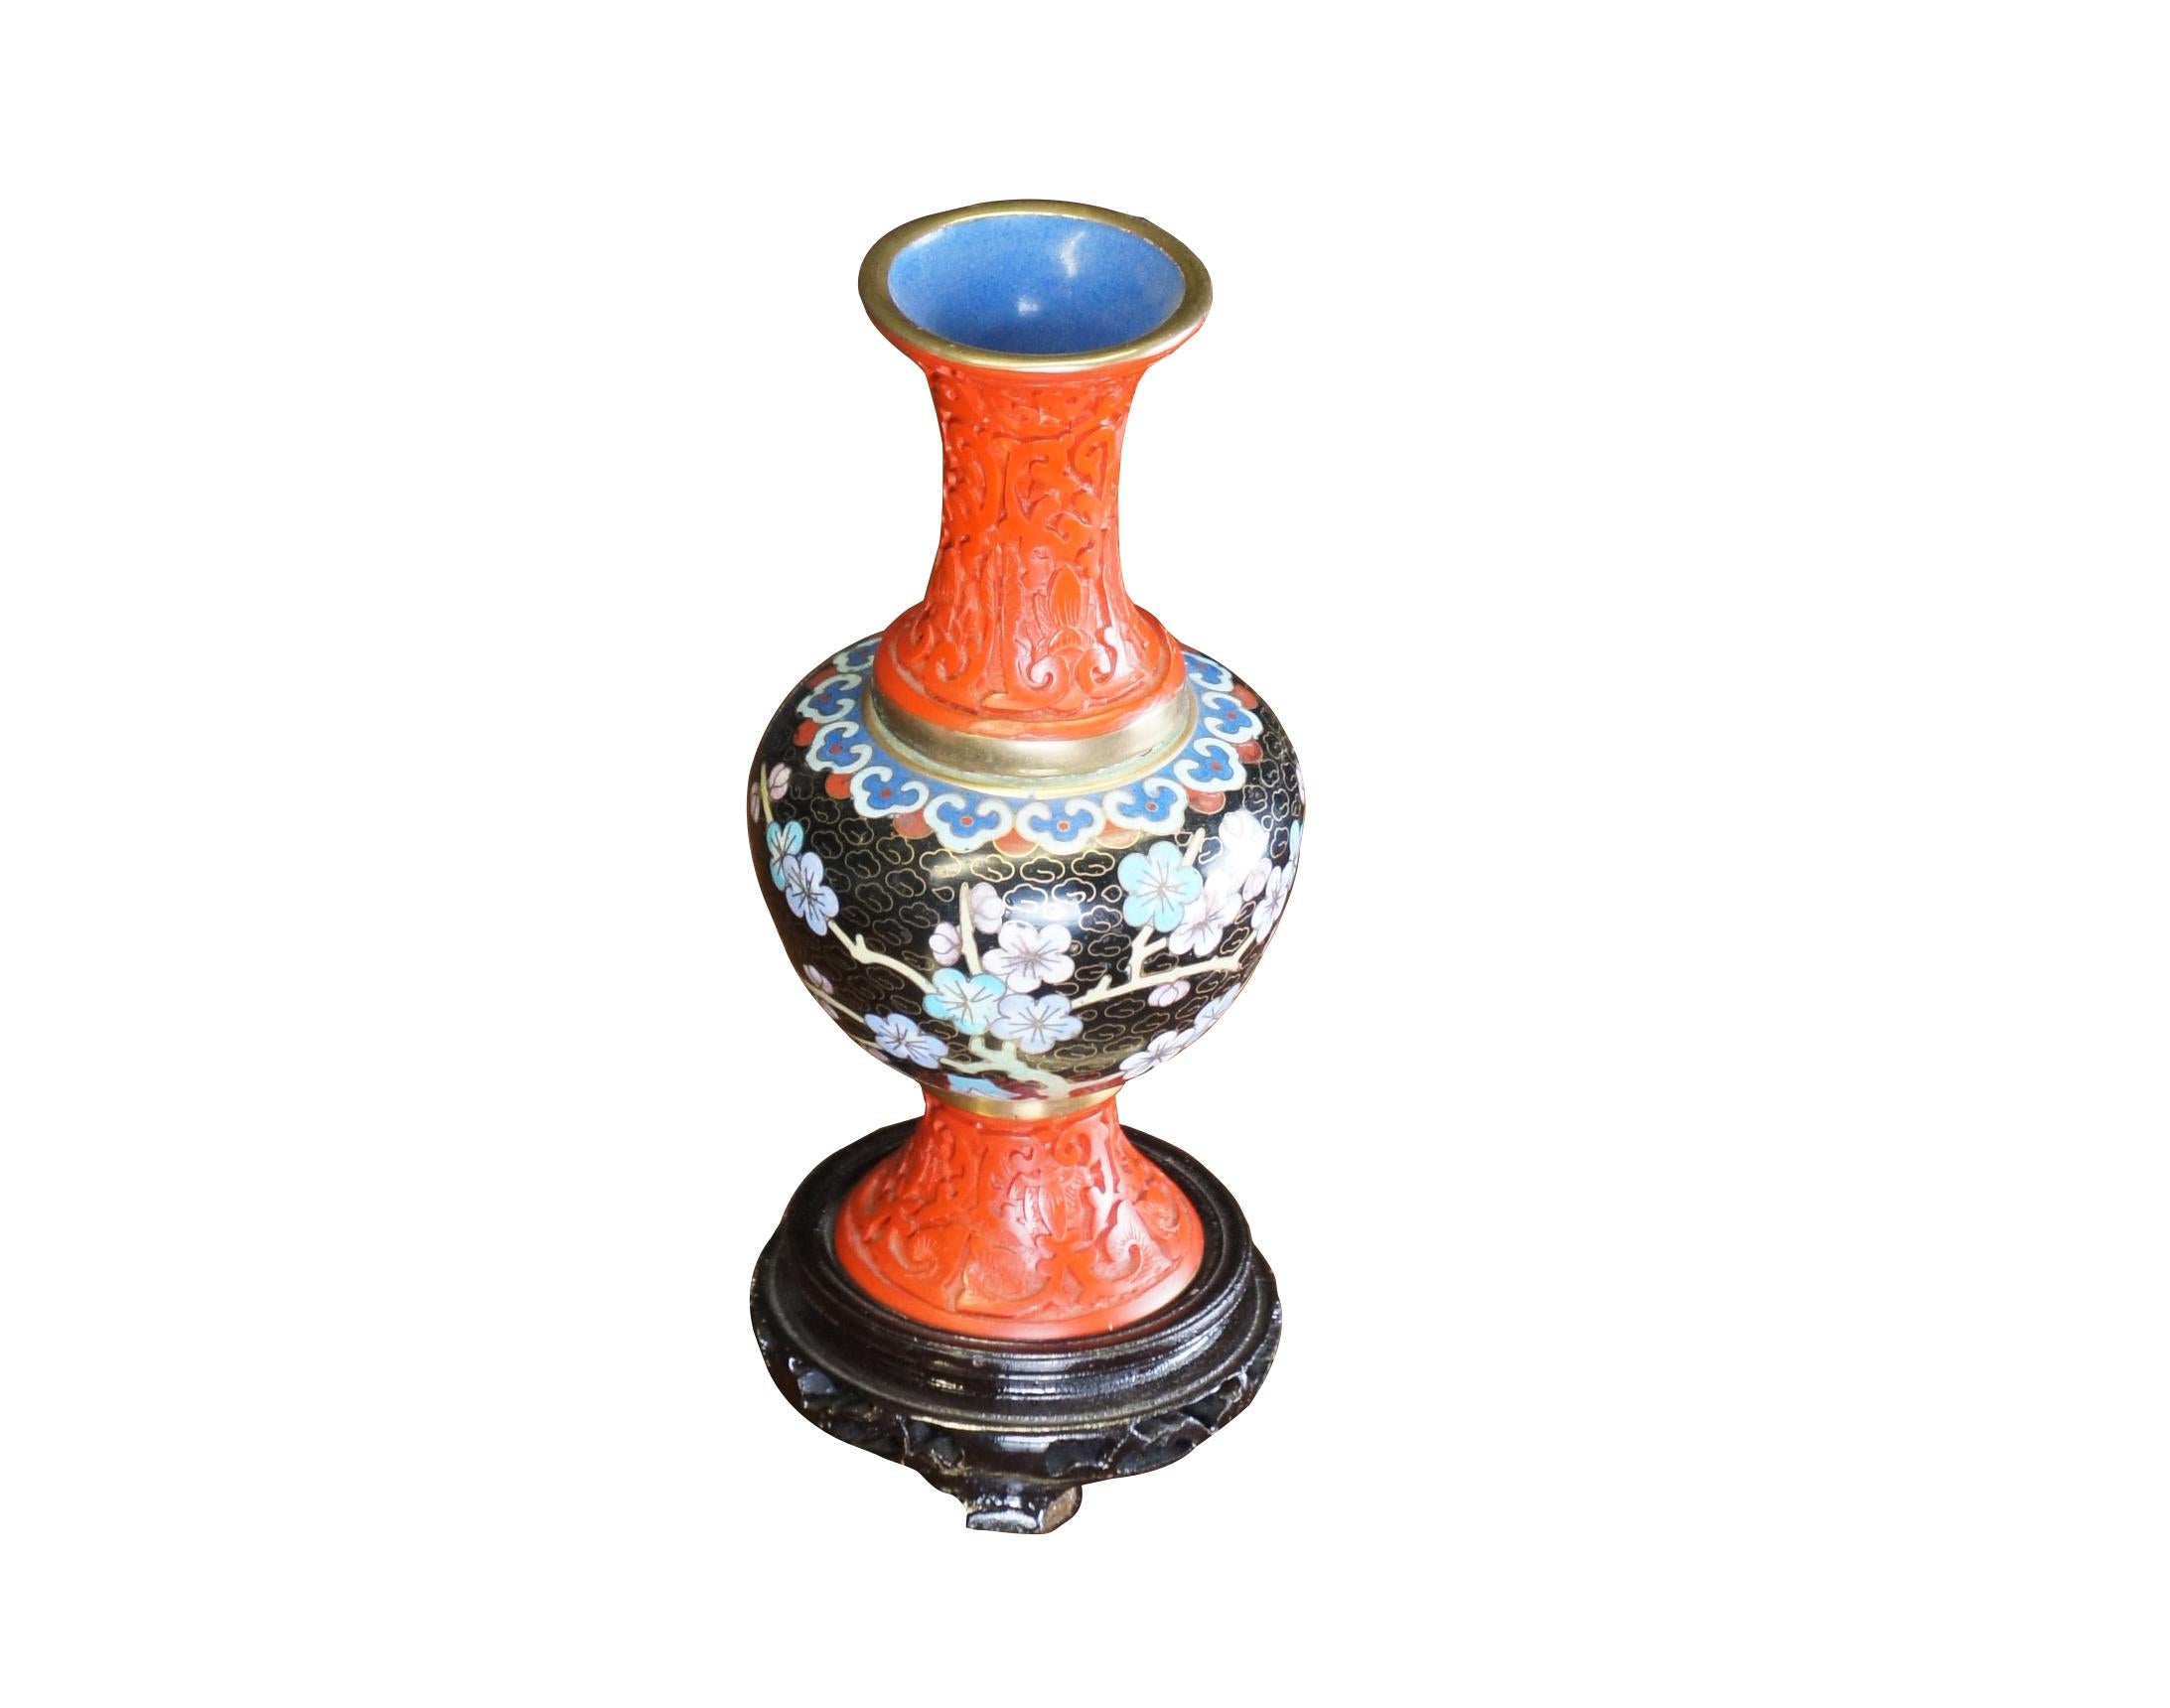 Antike chinesische Chinoiserie-Vase mit geschnitztem Zinnober mit Messingakzenten und emaillierten Kirschblüten auf einem Feld aus schwarzen Wolken.  Inklusive Standfuß.

Abmessungen: 
7